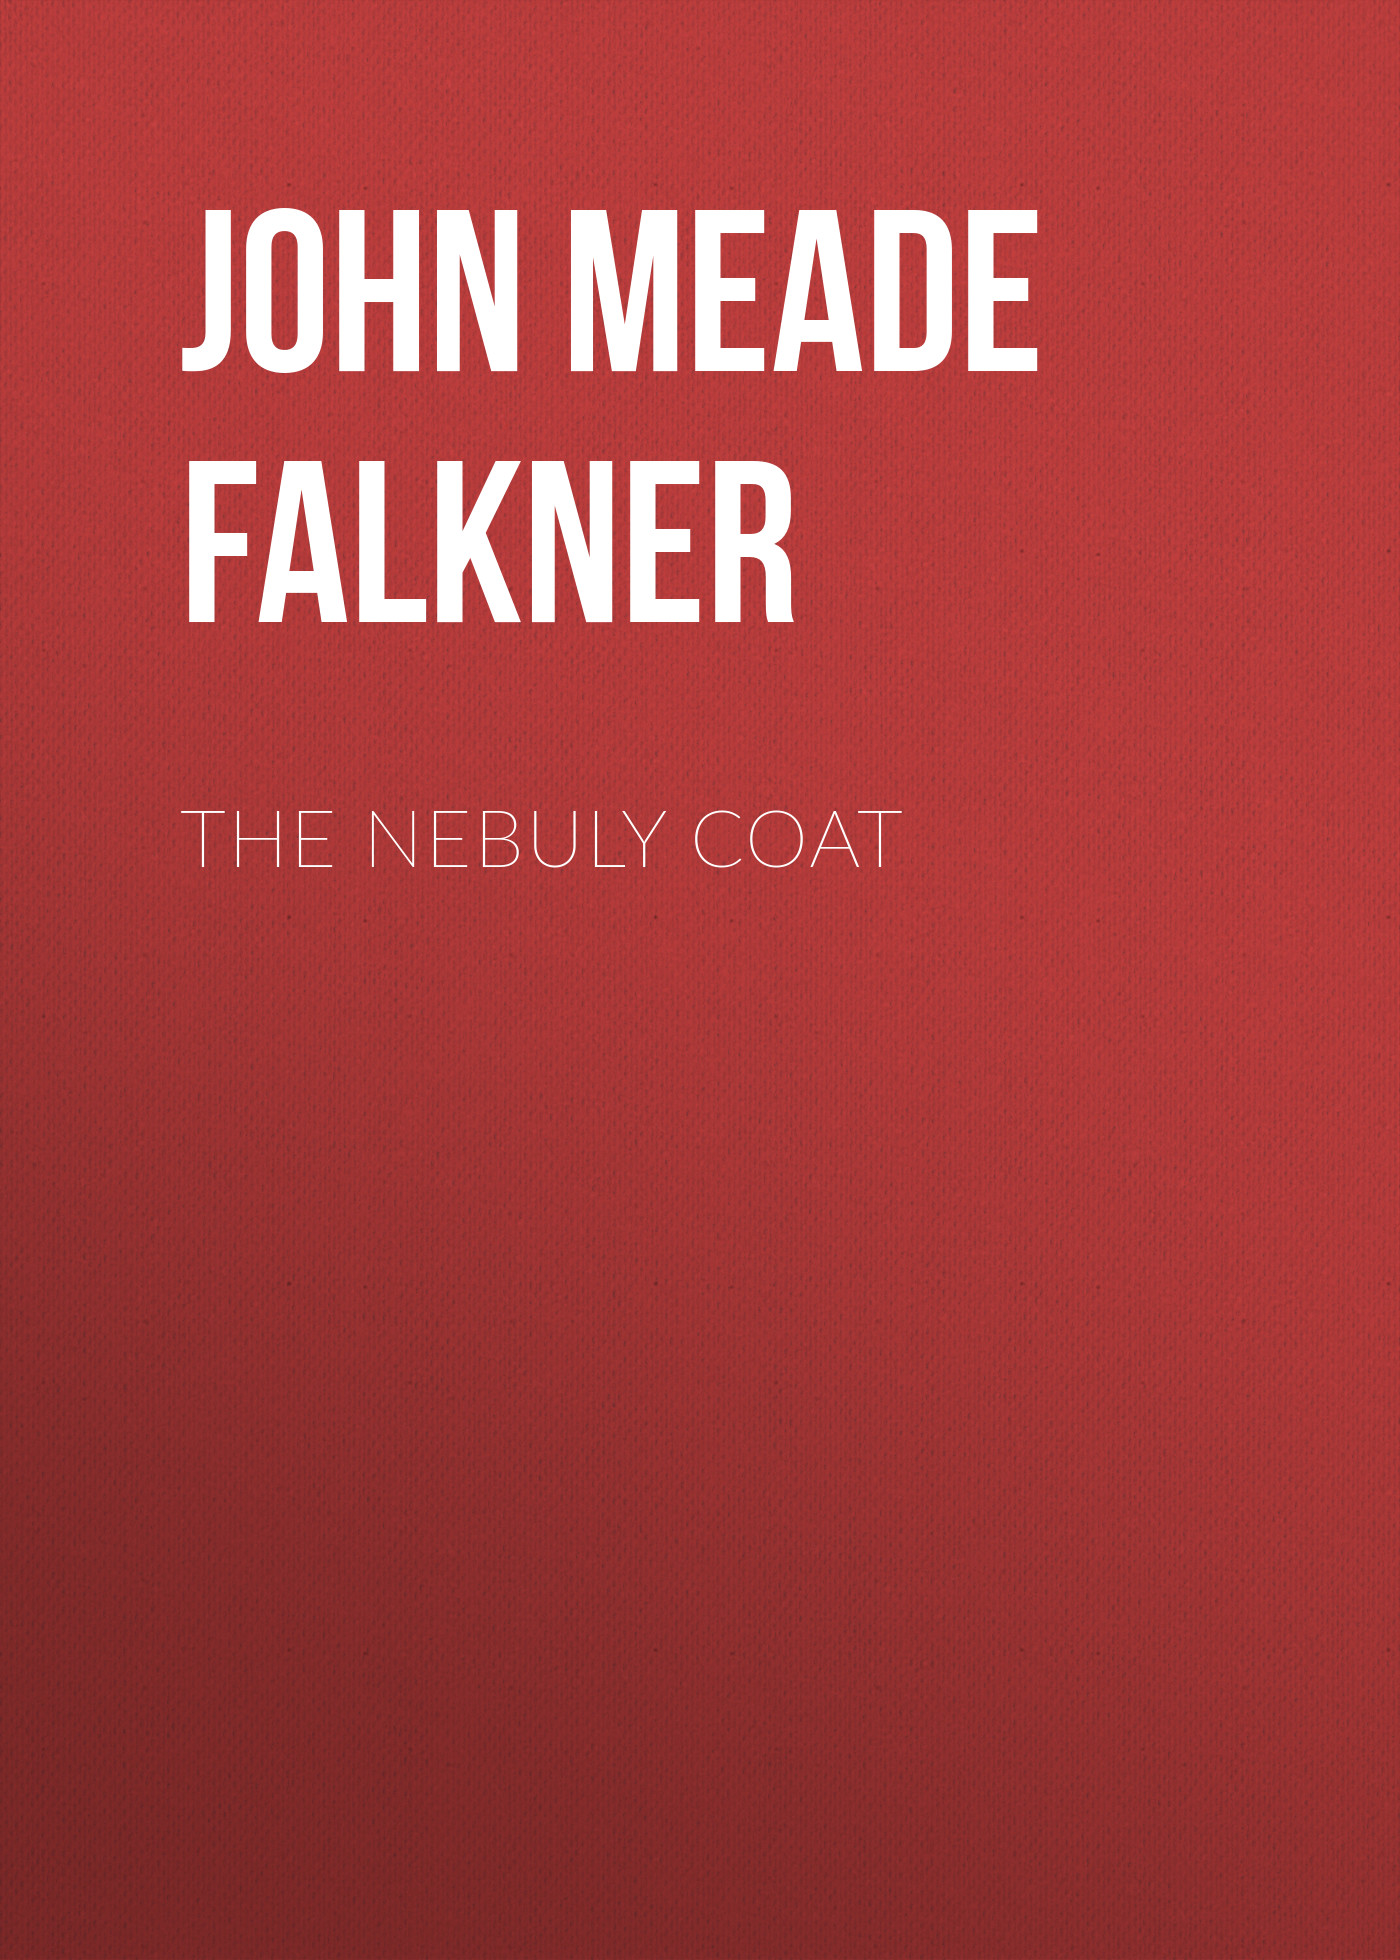 Книга The Nebuly Coat из серии , созданная John Meade Falkner, может относится к жанру Зарубежная старинная литература, Зарубежная прикладная и научно-популярная литература, Архитектура. Стоимость электронной книги The Nebuly Coat с идентификатором 35007961 составляет 0 руб.